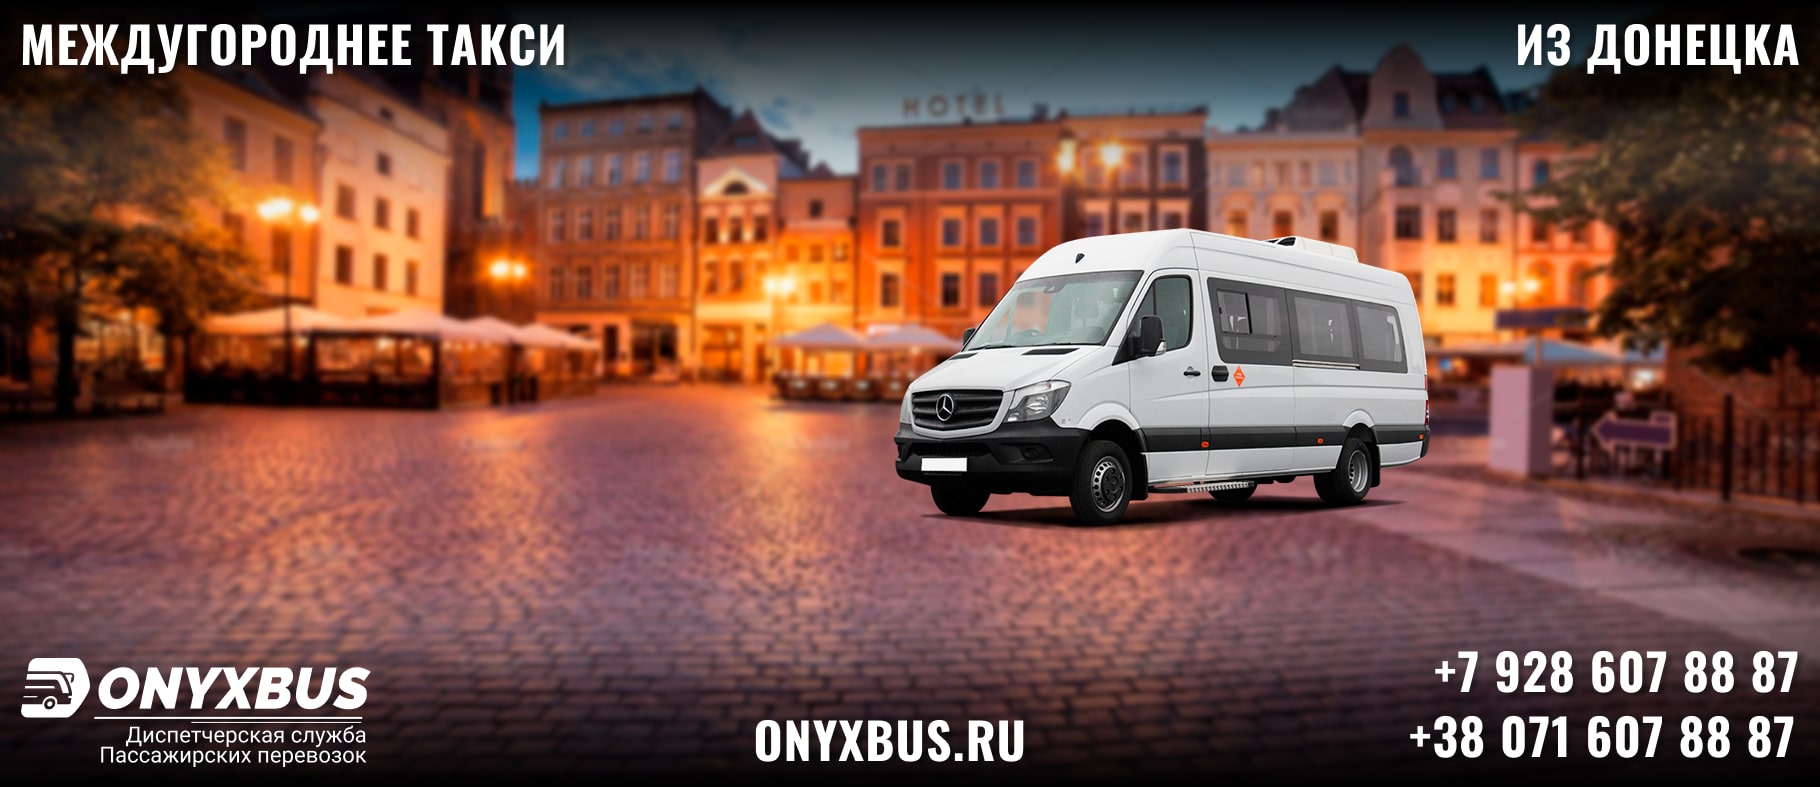 Заказ <br>Микроавтобуса Донецк - Кабардинка